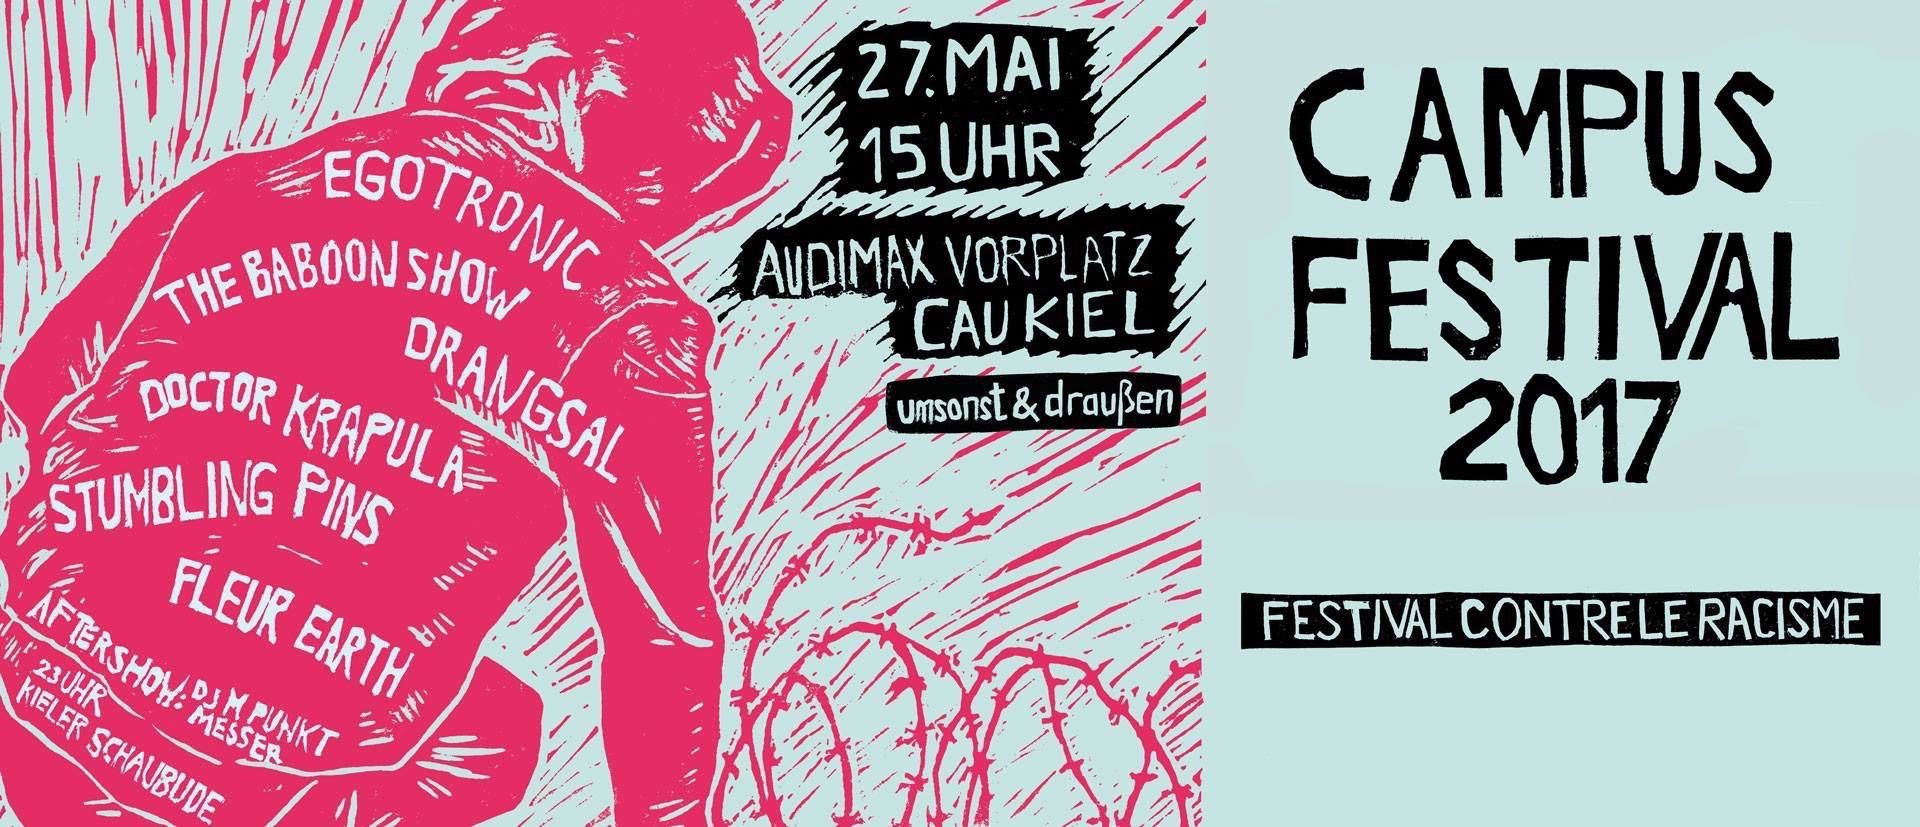 Campus Festival 2017 – Festival Contre Le Racisme